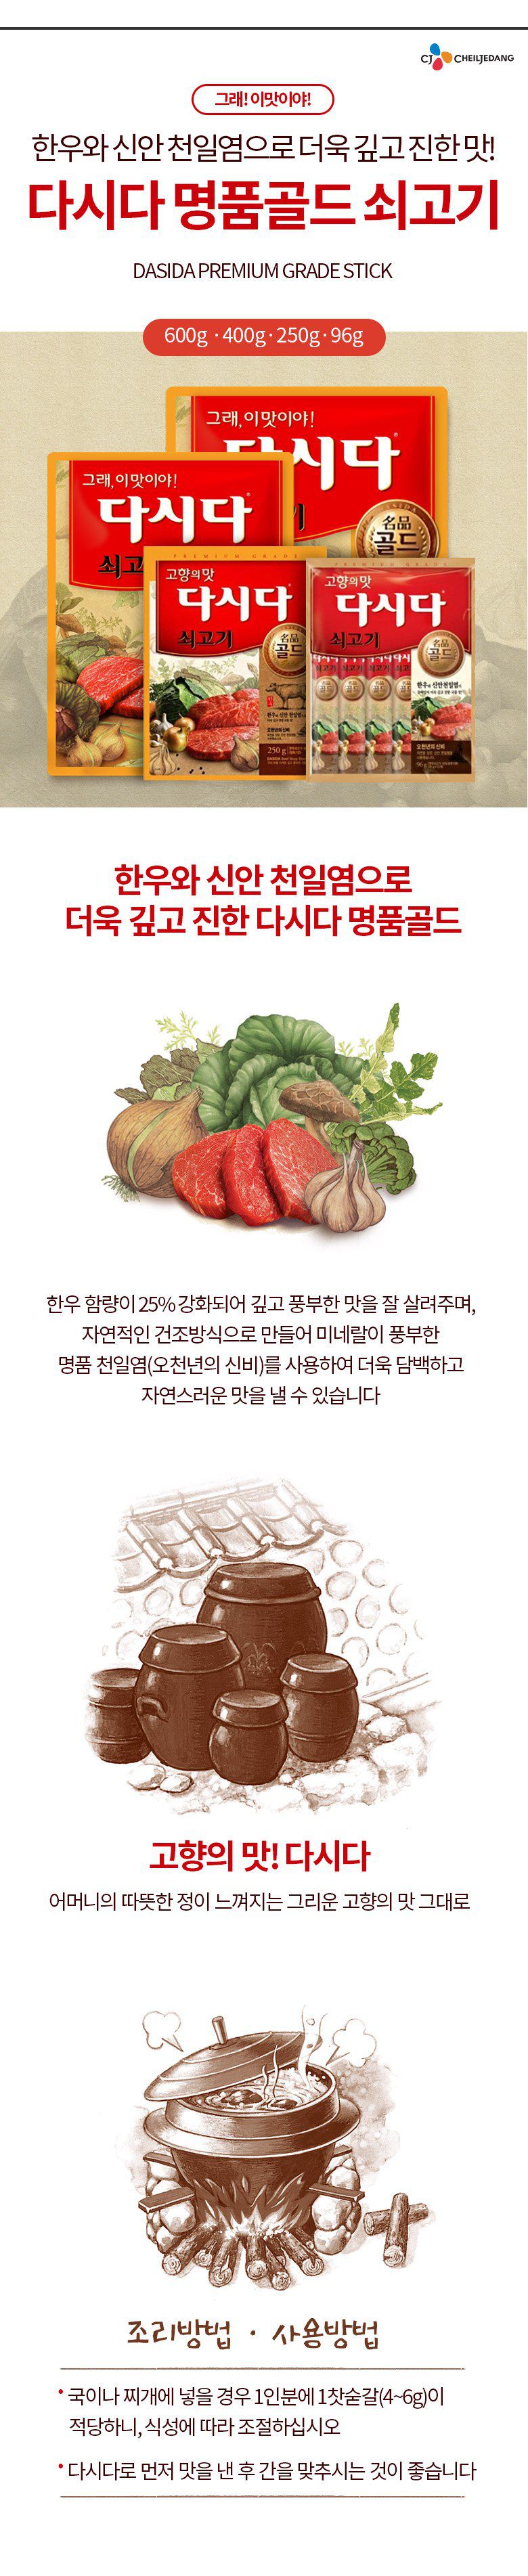 韓國食品-[CJ] 다시다[쇠고기] 1kg